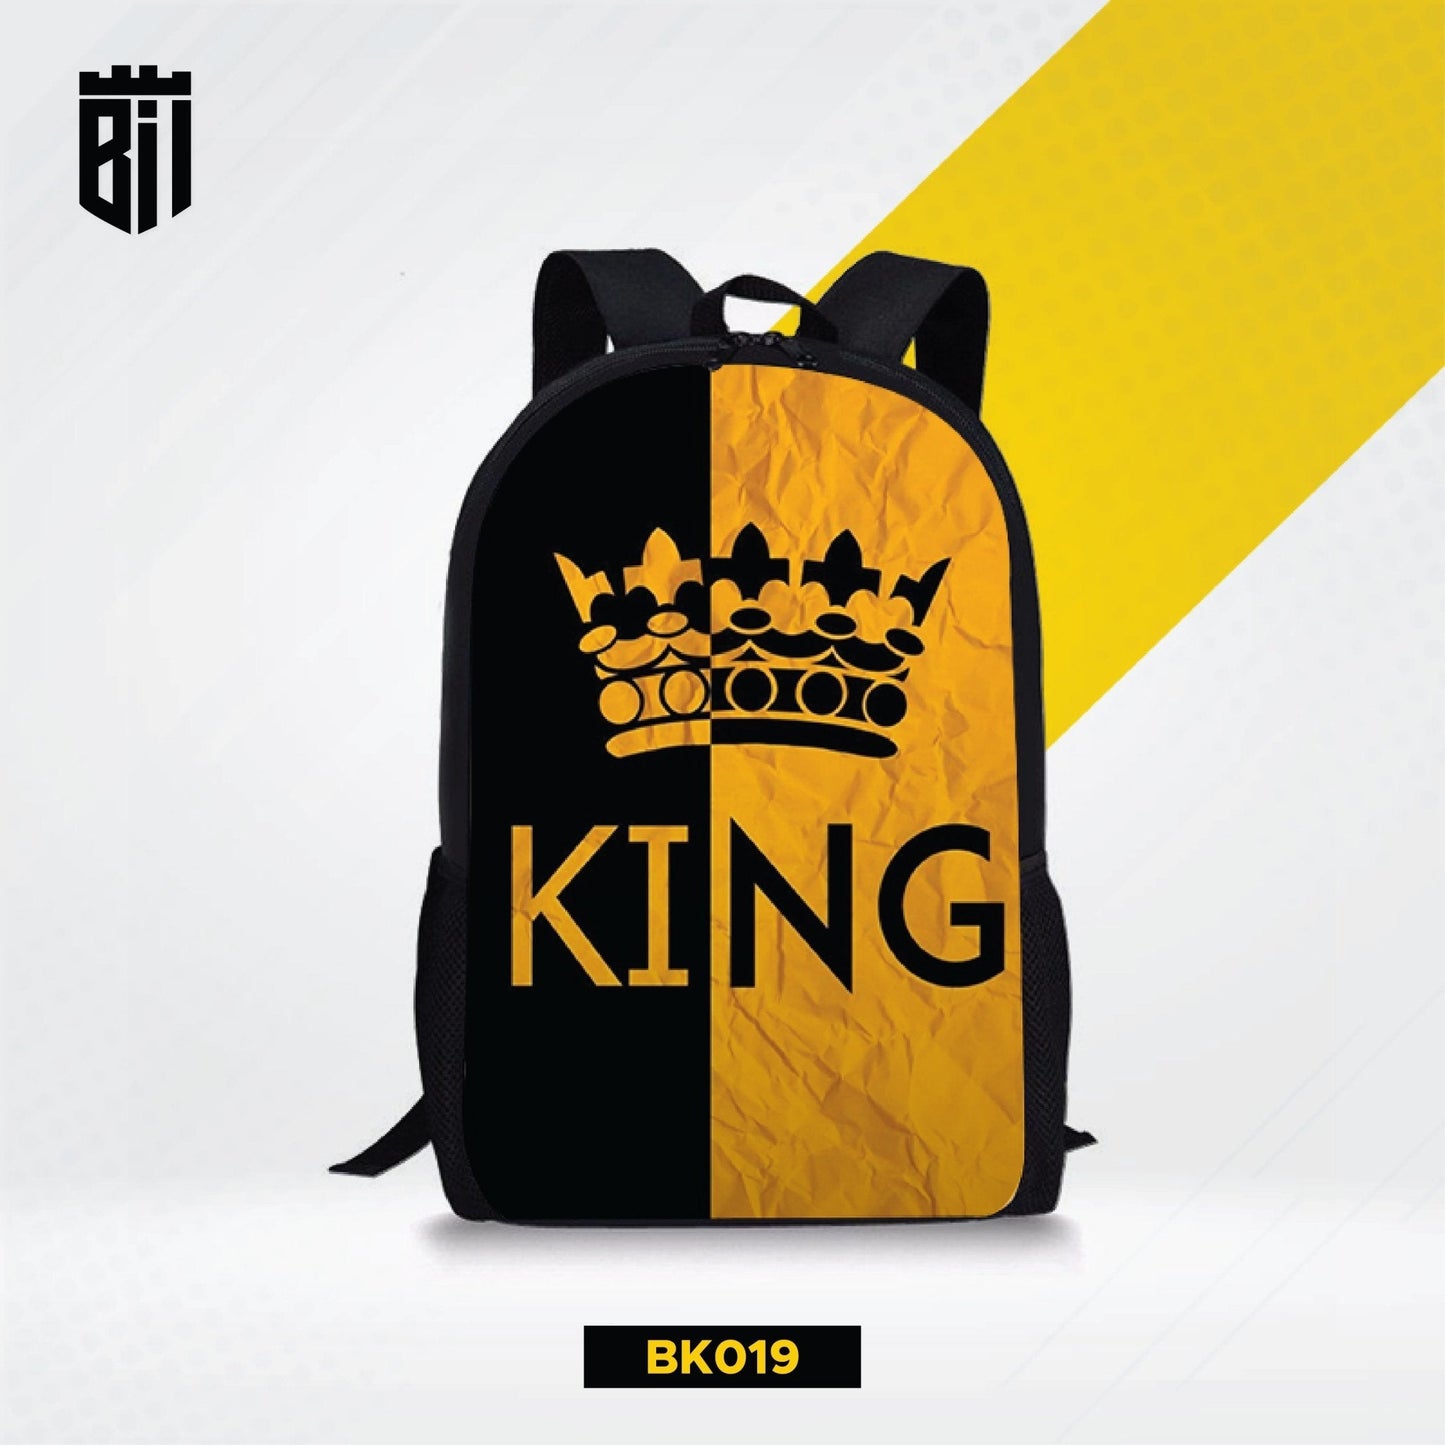 BK019 King Backpack - BREACHIT